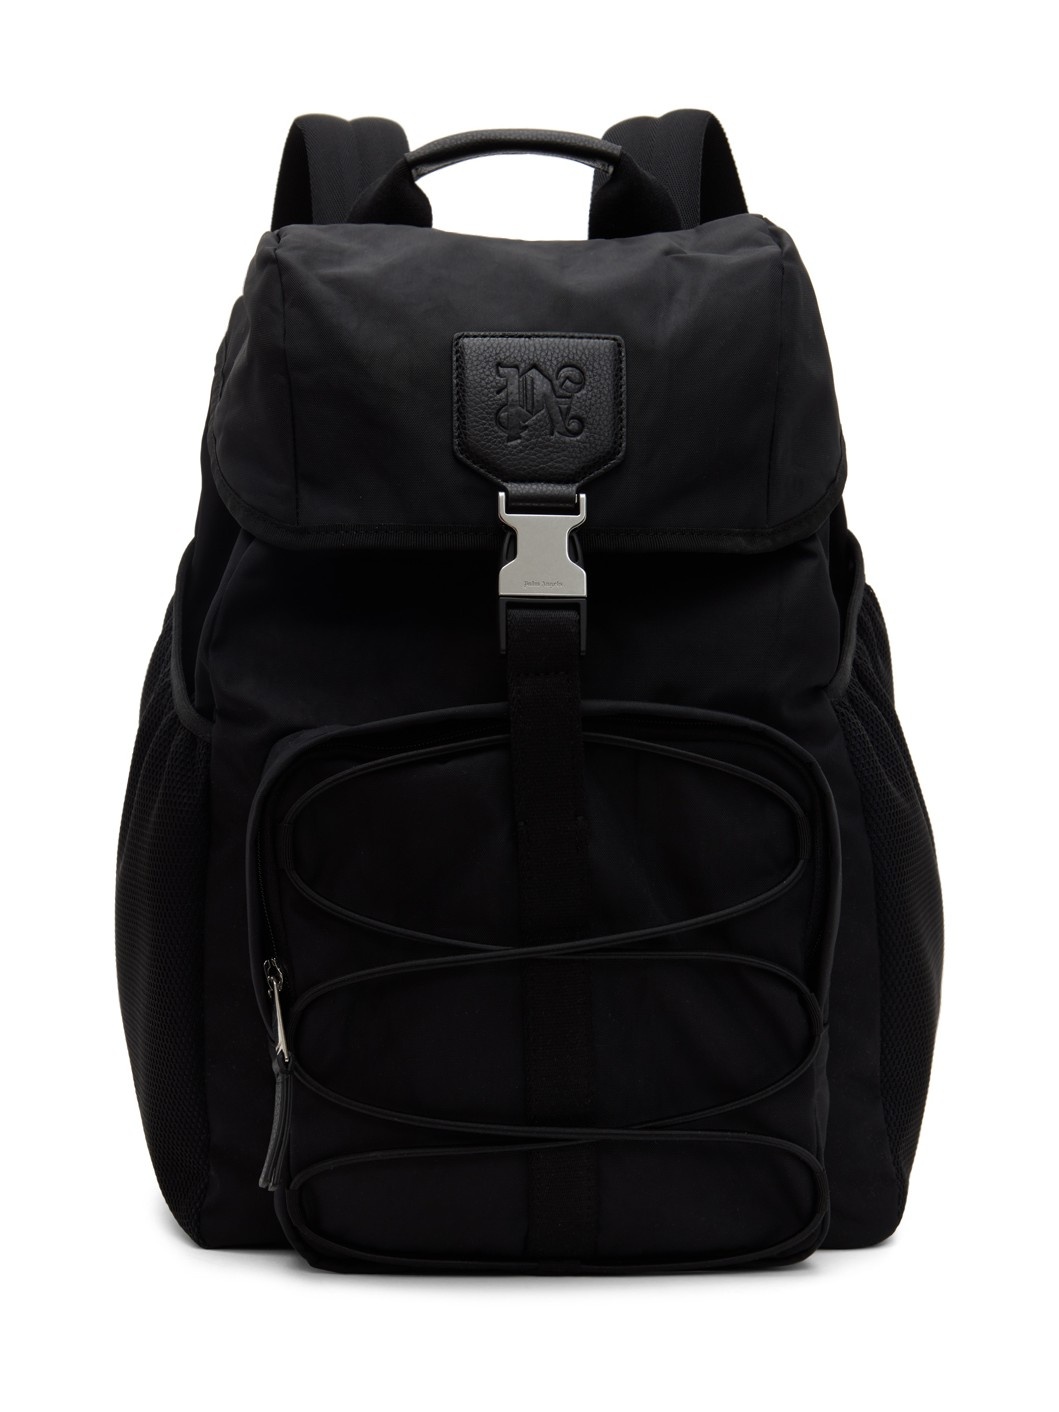 Black Buckle Monogram Backpack - 1